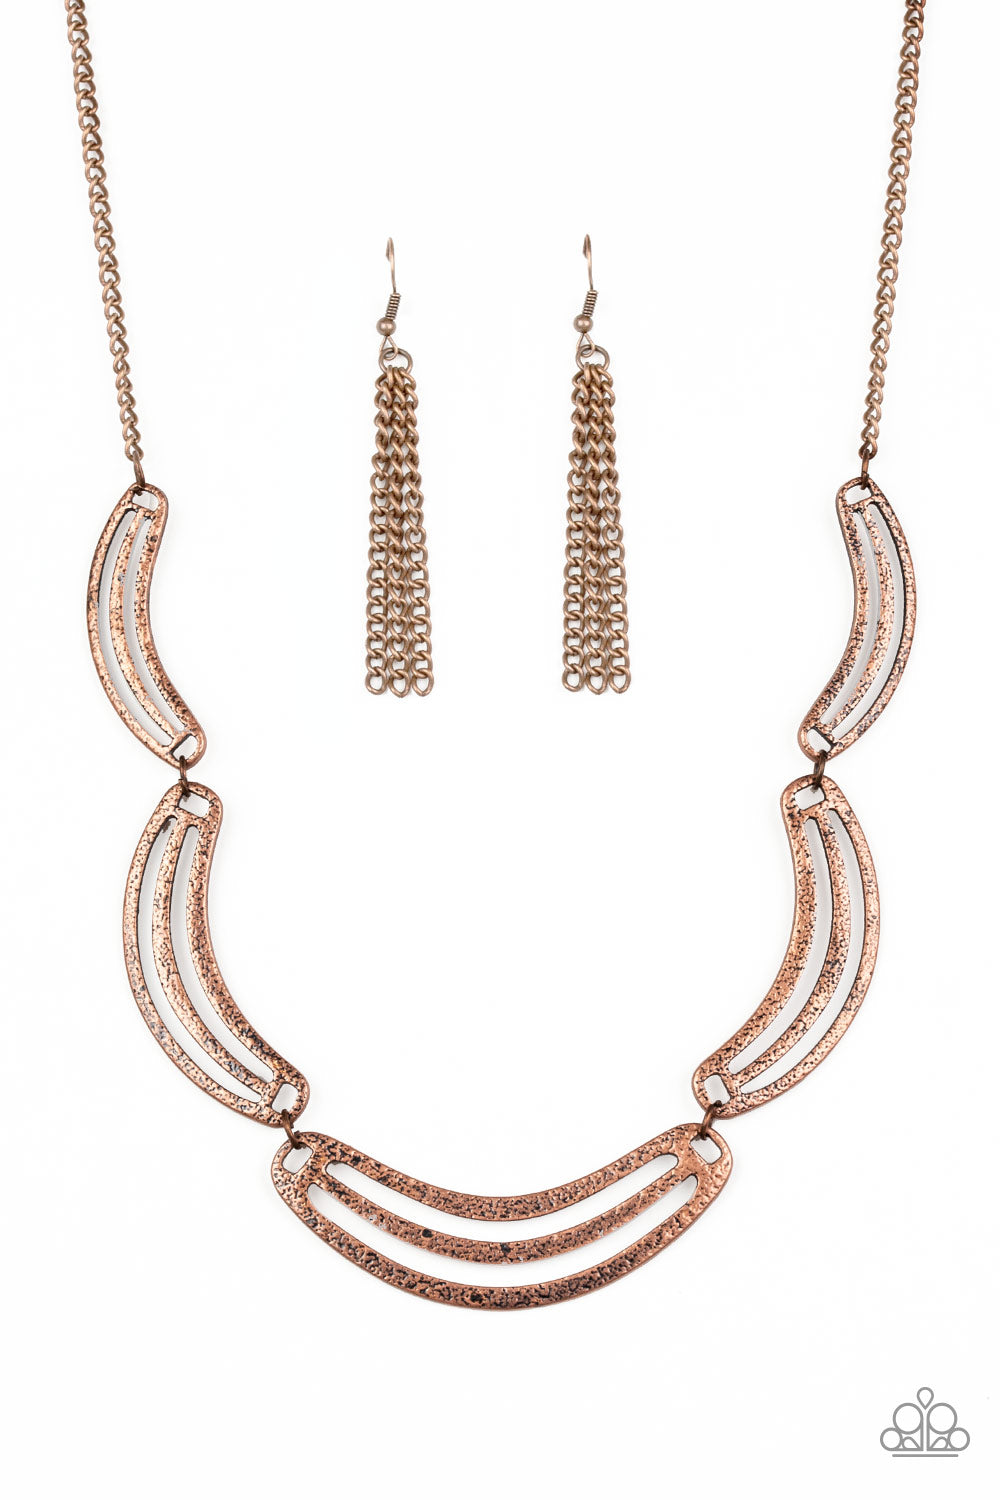 Palm Springs Pharaoh Copper Necklace - Daria's Blings N Things